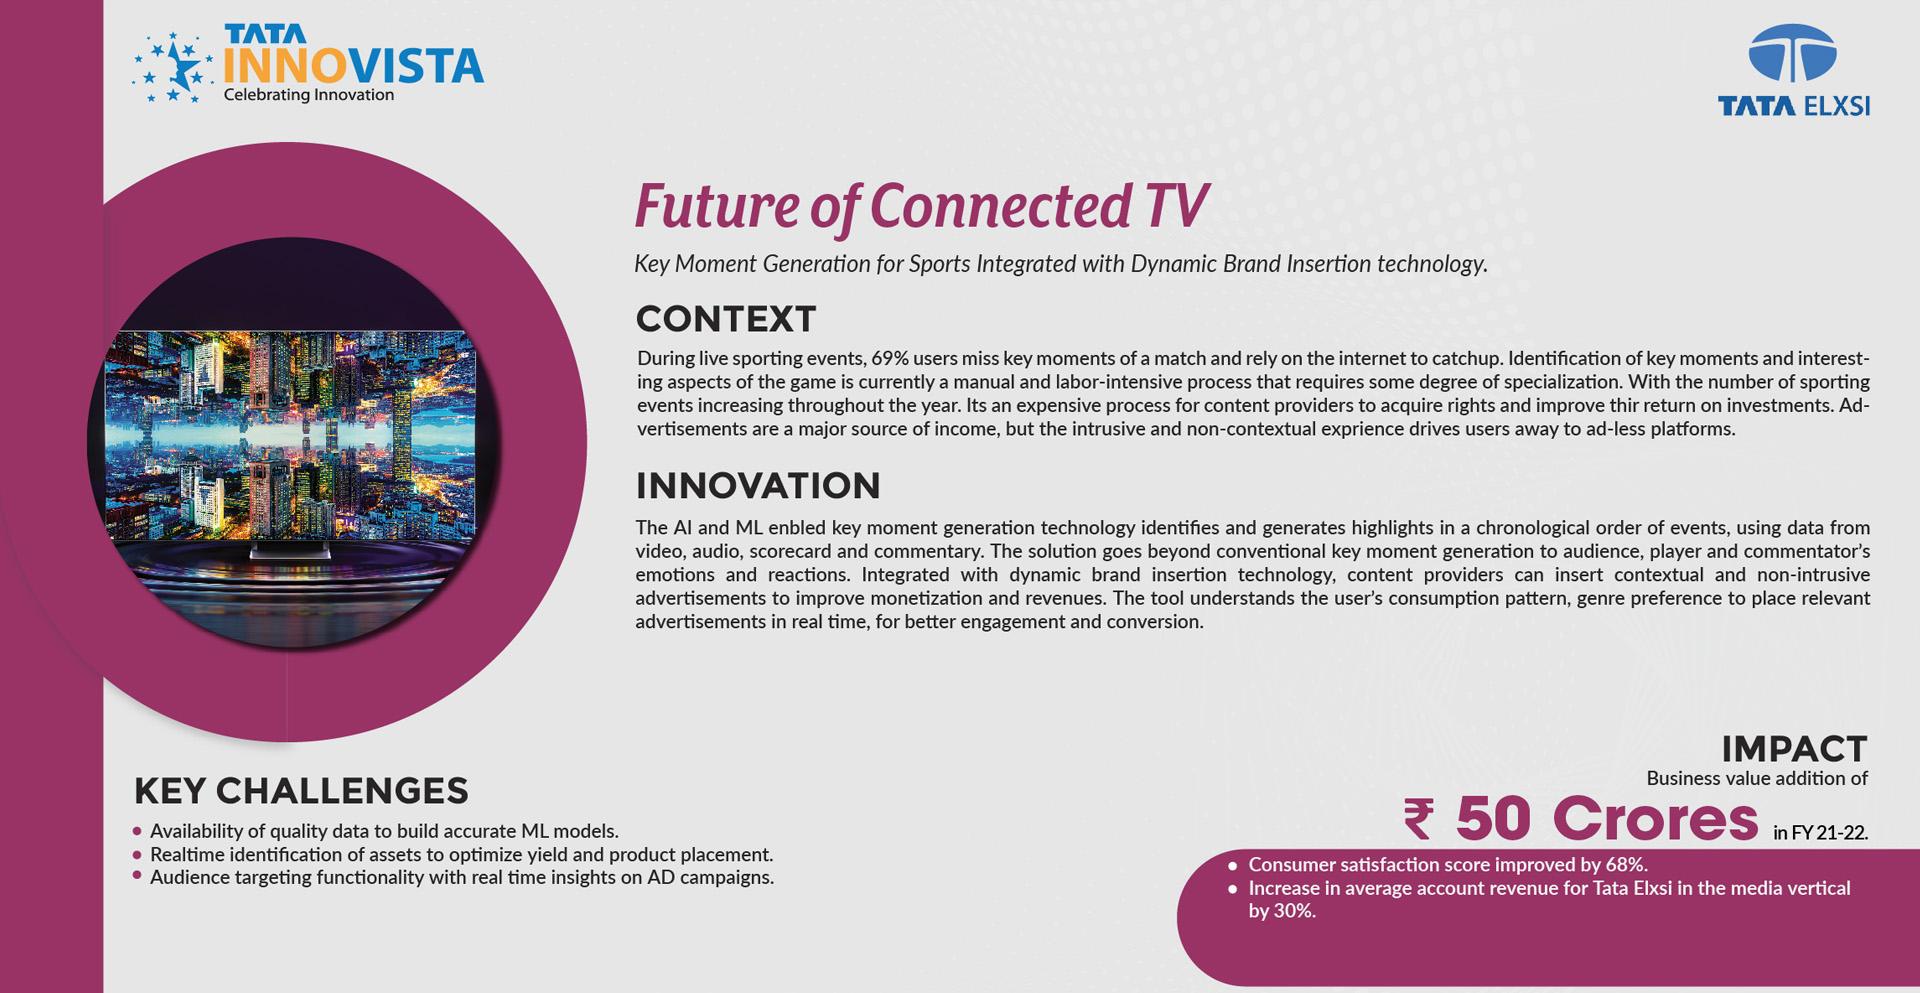 Tata Elxsi - Future of Connected TV